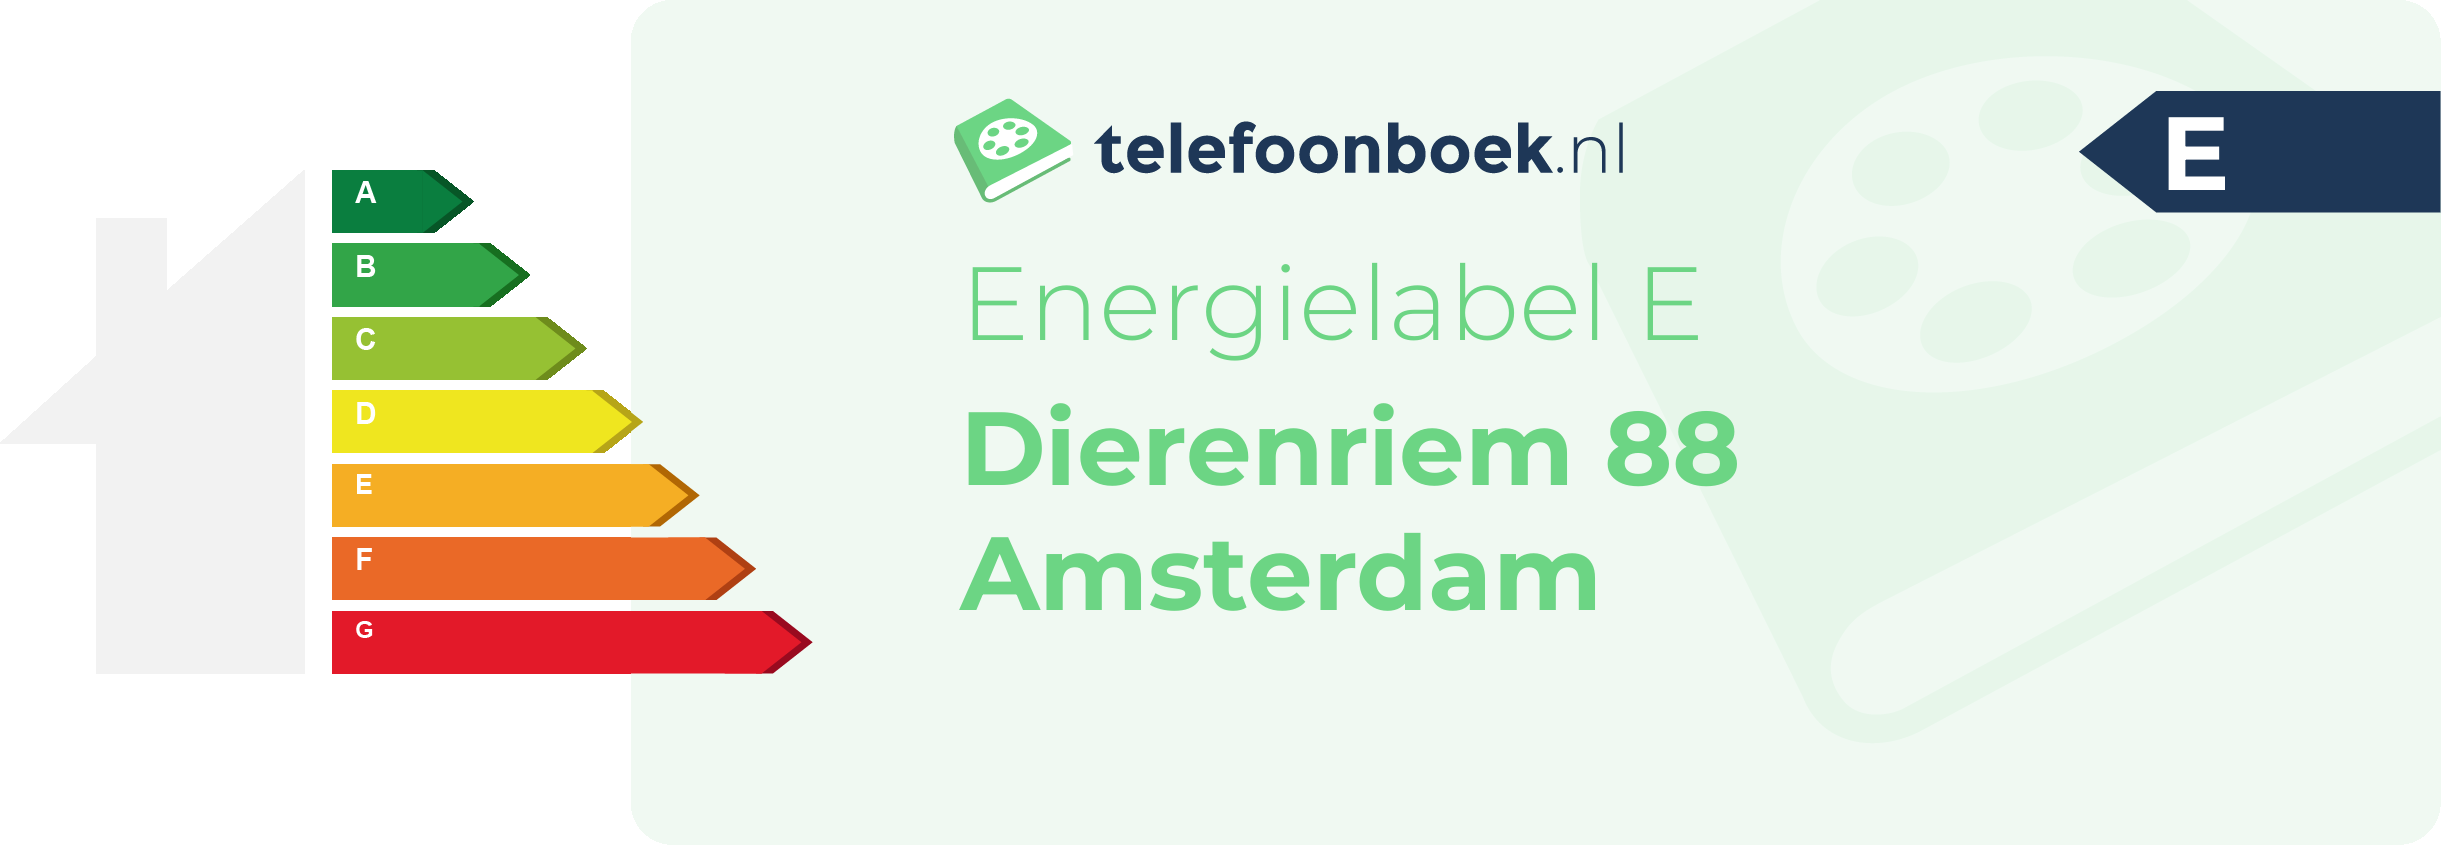 Energielabel Dierenriem 88 Amsterdam